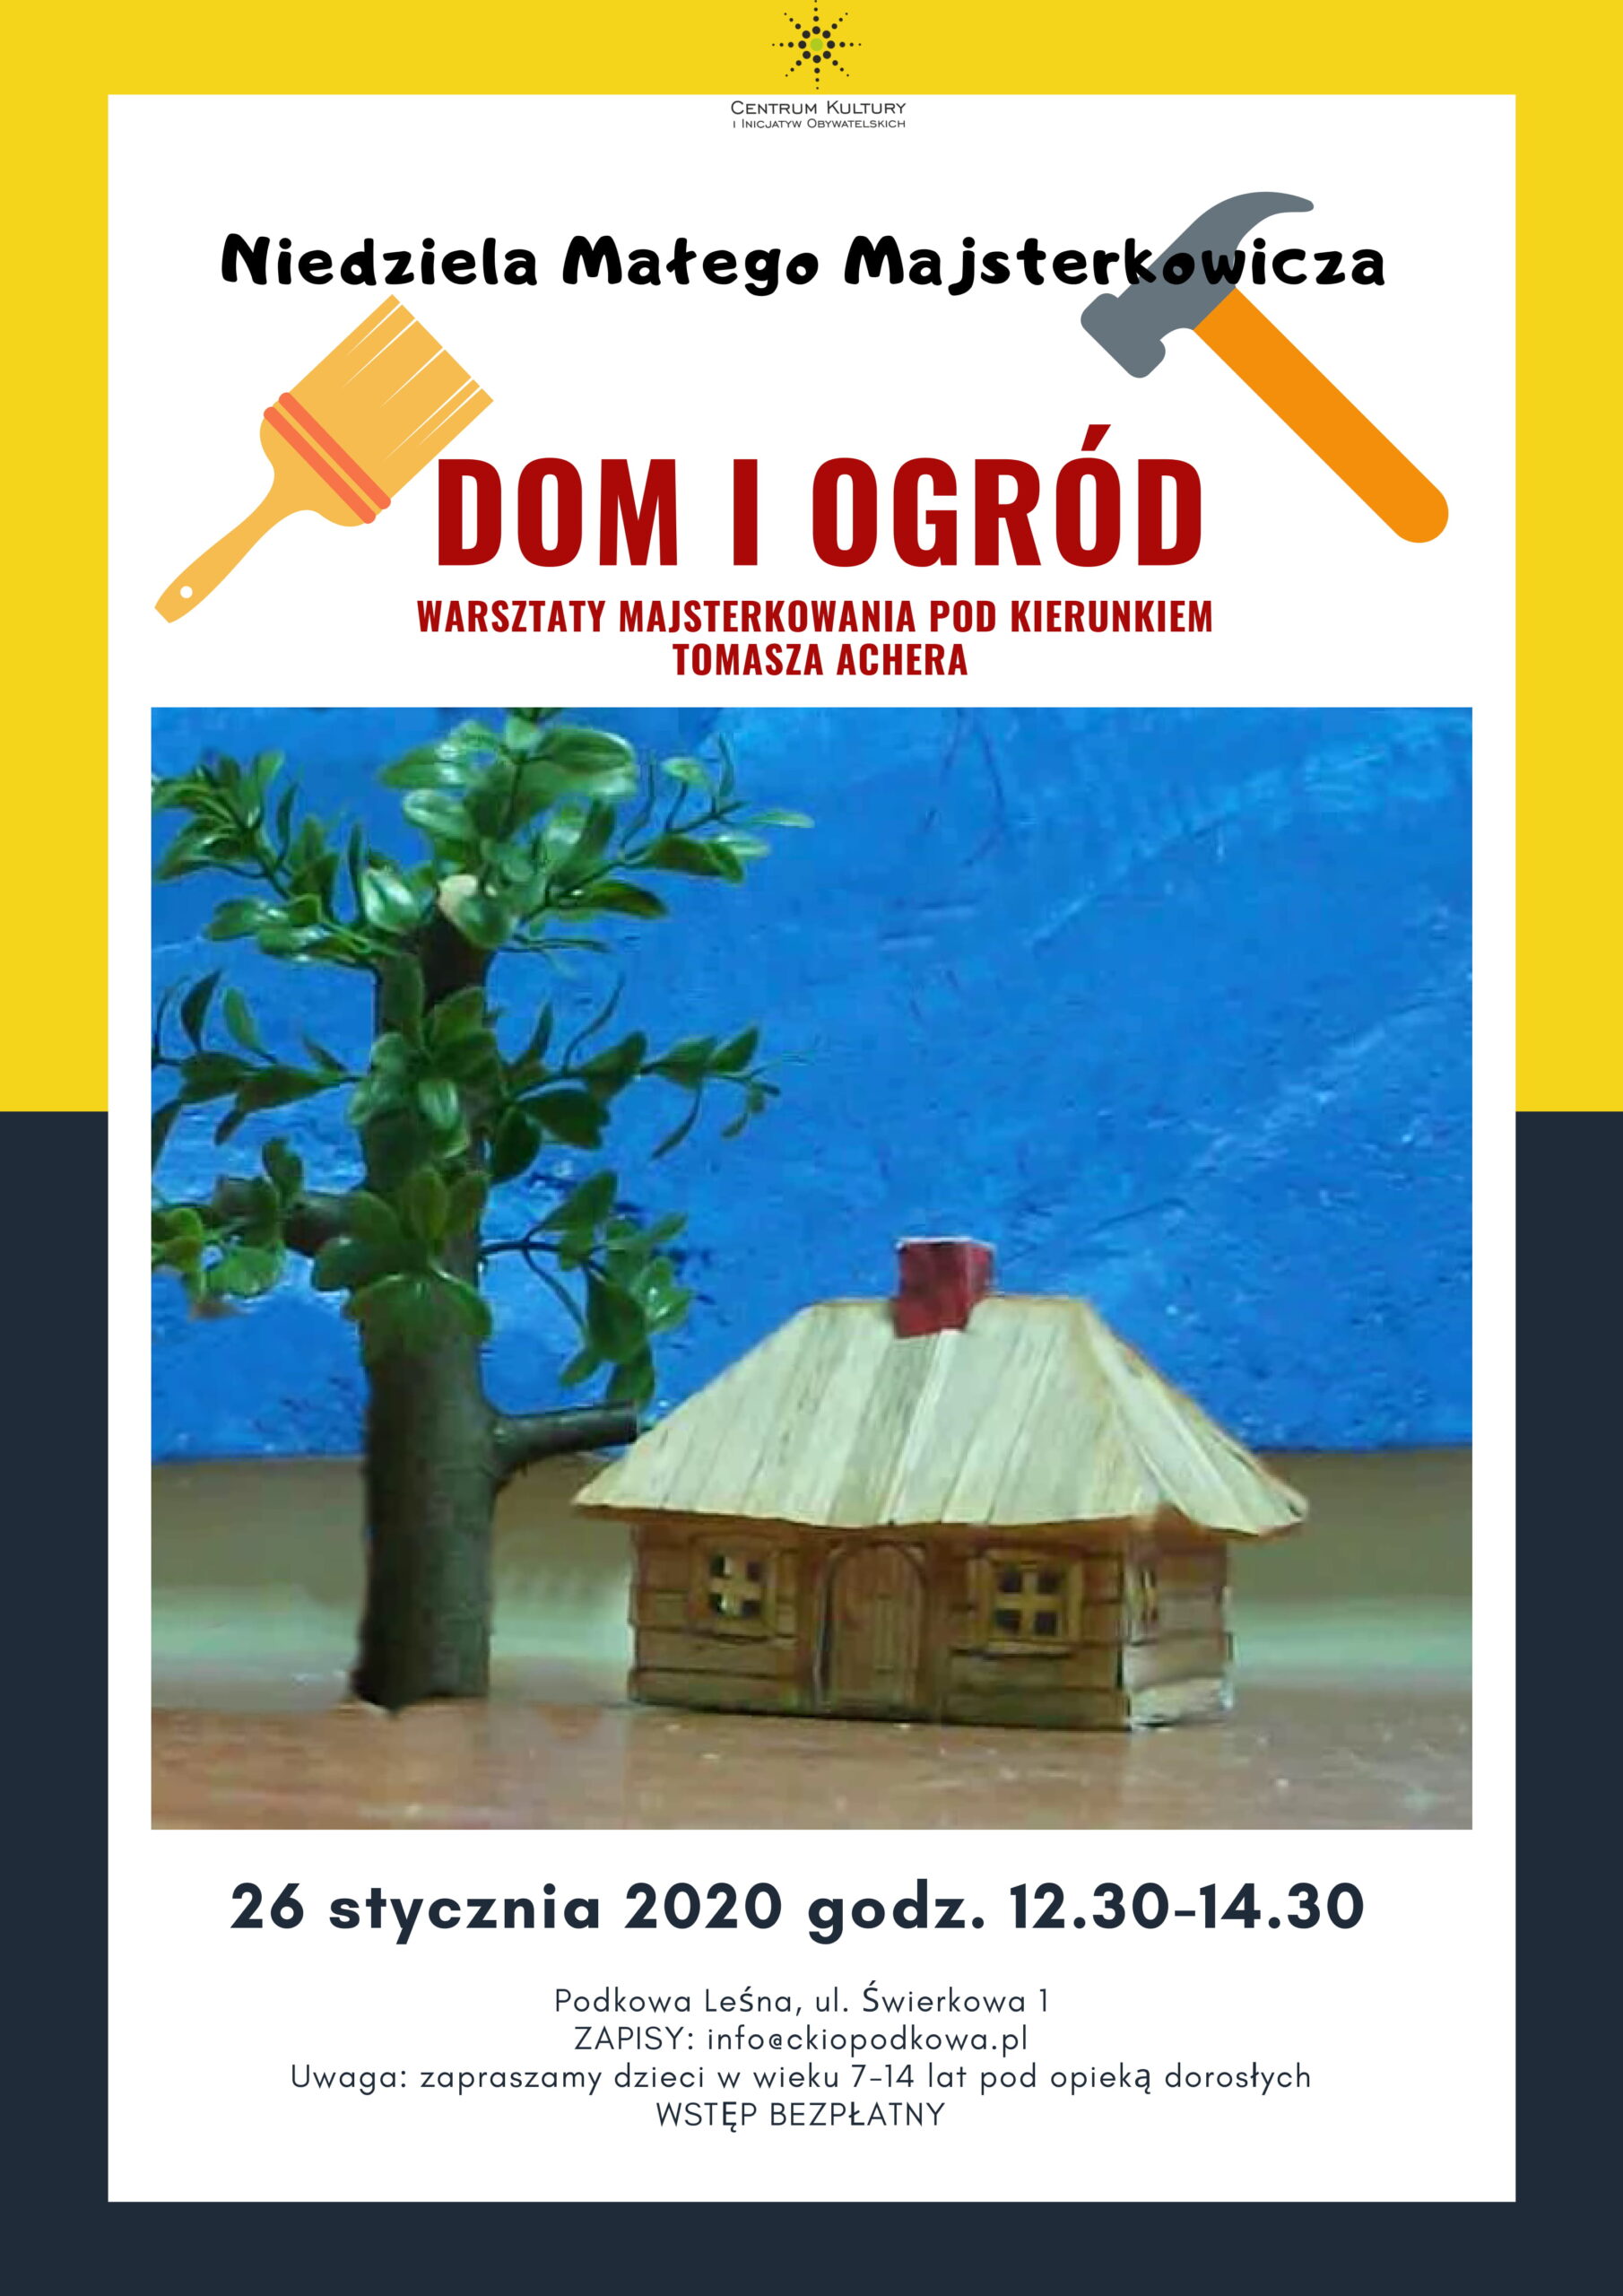 You are currently viewing Niedziela Małego Majsterkowicza: Dom i ogród